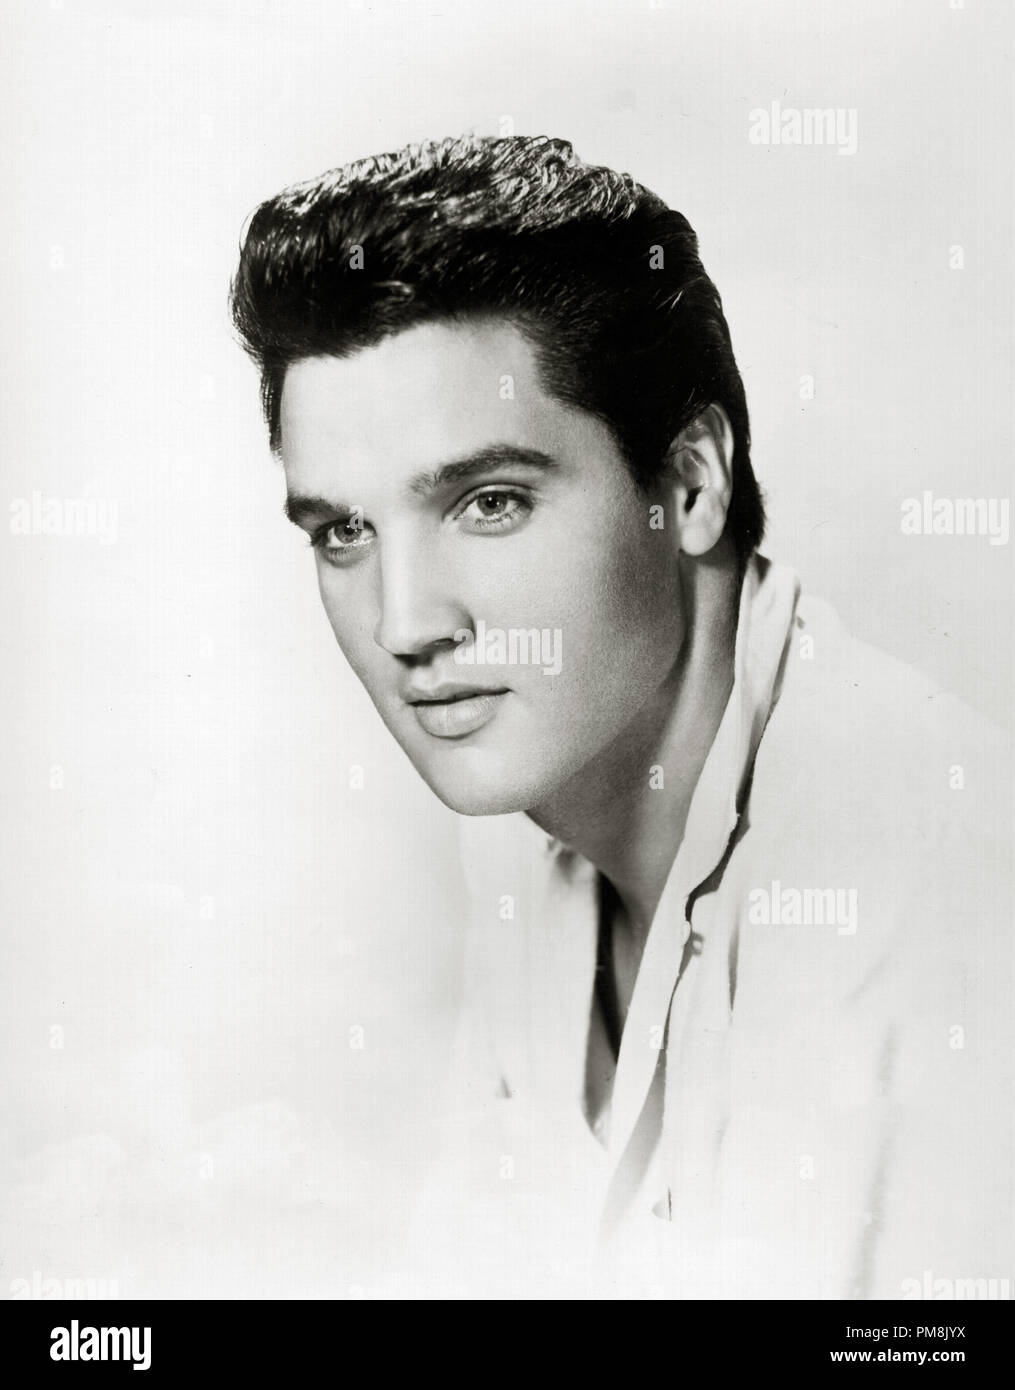 (Archivage classique du cinéma - Rétrospective) Elvis Presley Elvis Presley, vers 1956. Référence #  31616 Fichier 073THA Banque D'Images